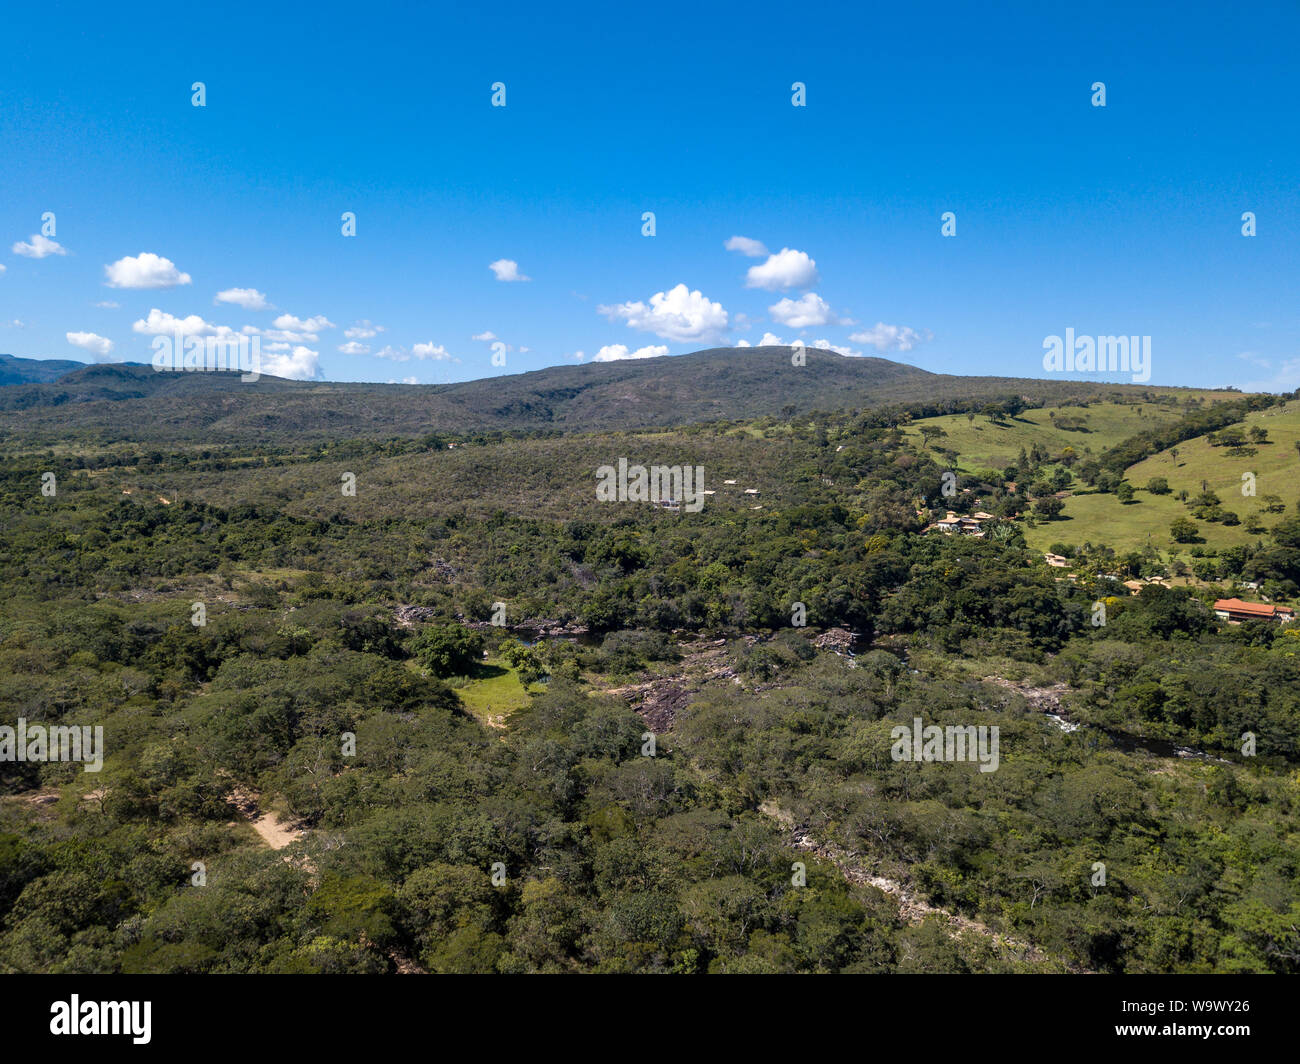 Hermosa vista aérea de la Serra do cipo en Minas Gerais con bosques y montañas en un día soleado de verano con el cielo azul. Paisaje de la brasileña cerrad Foto de stock